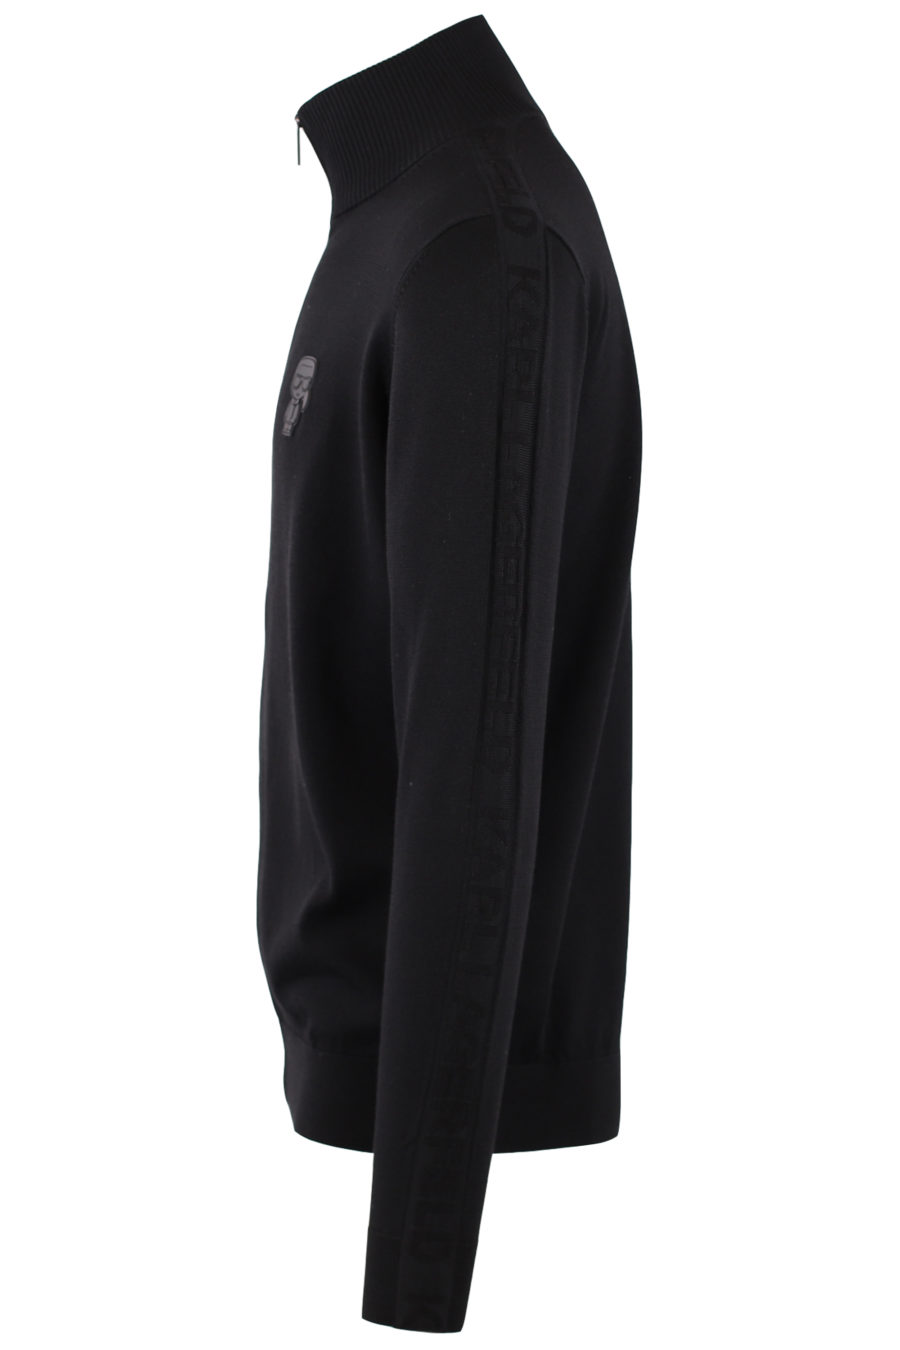 Camisola preta com fecho de correr e logótipo "Karl" em borracha - IMG 9155